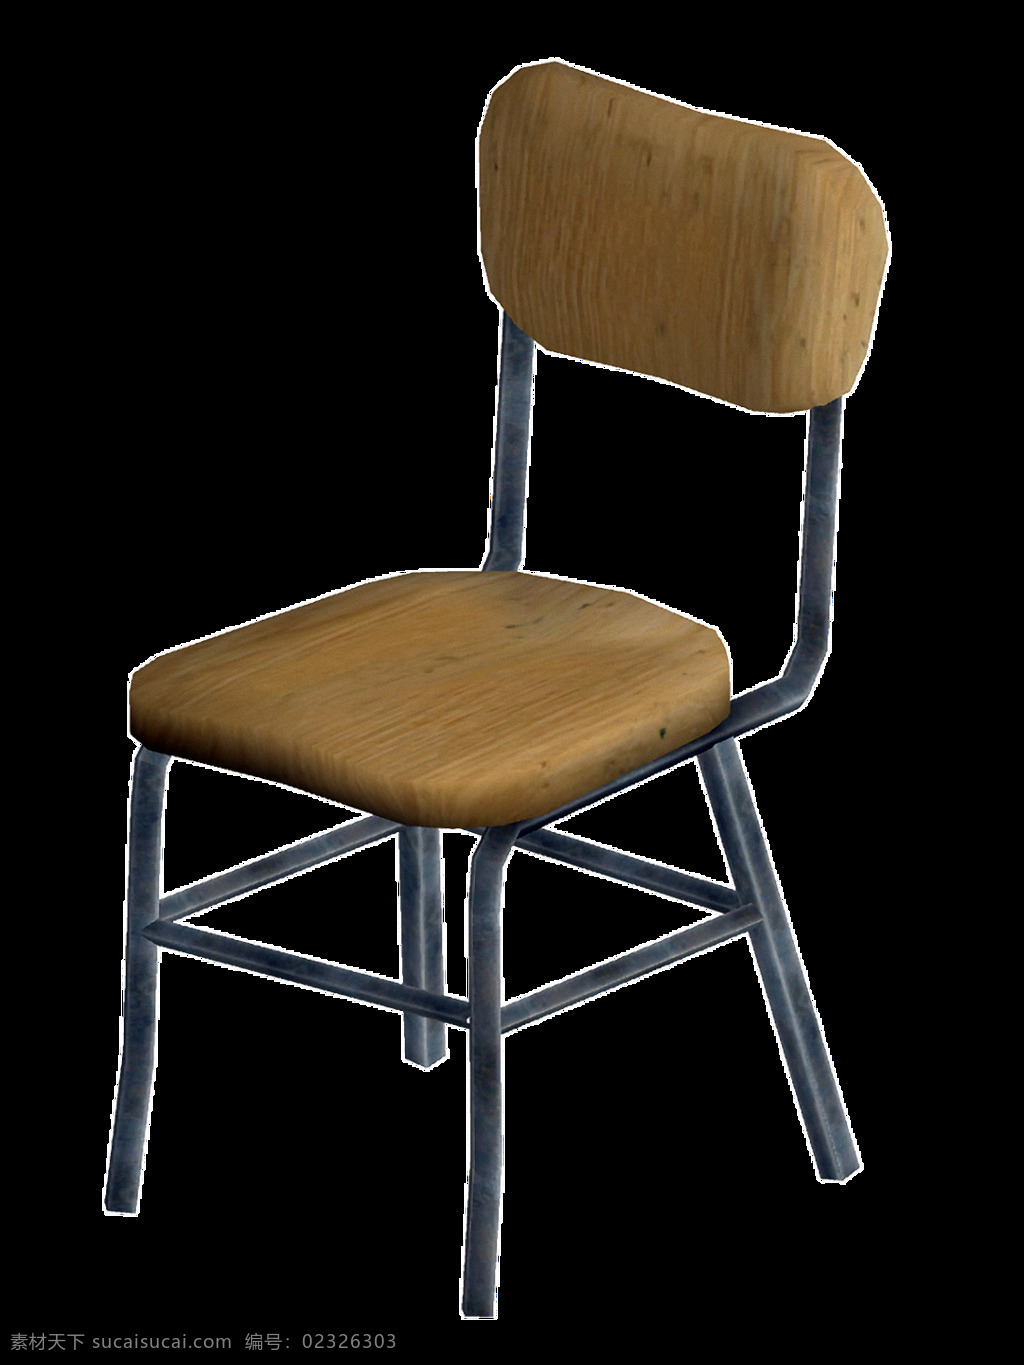 软件 金属 椅子 免 抠 透明 软件金属椅子 办公椅图片 木椅子 椅子背 现代简约椅子 创意椅子设计 创意椅子 木头椅子 休闲椅子 塑料椅子 木椅 电脑椅 椅子素材